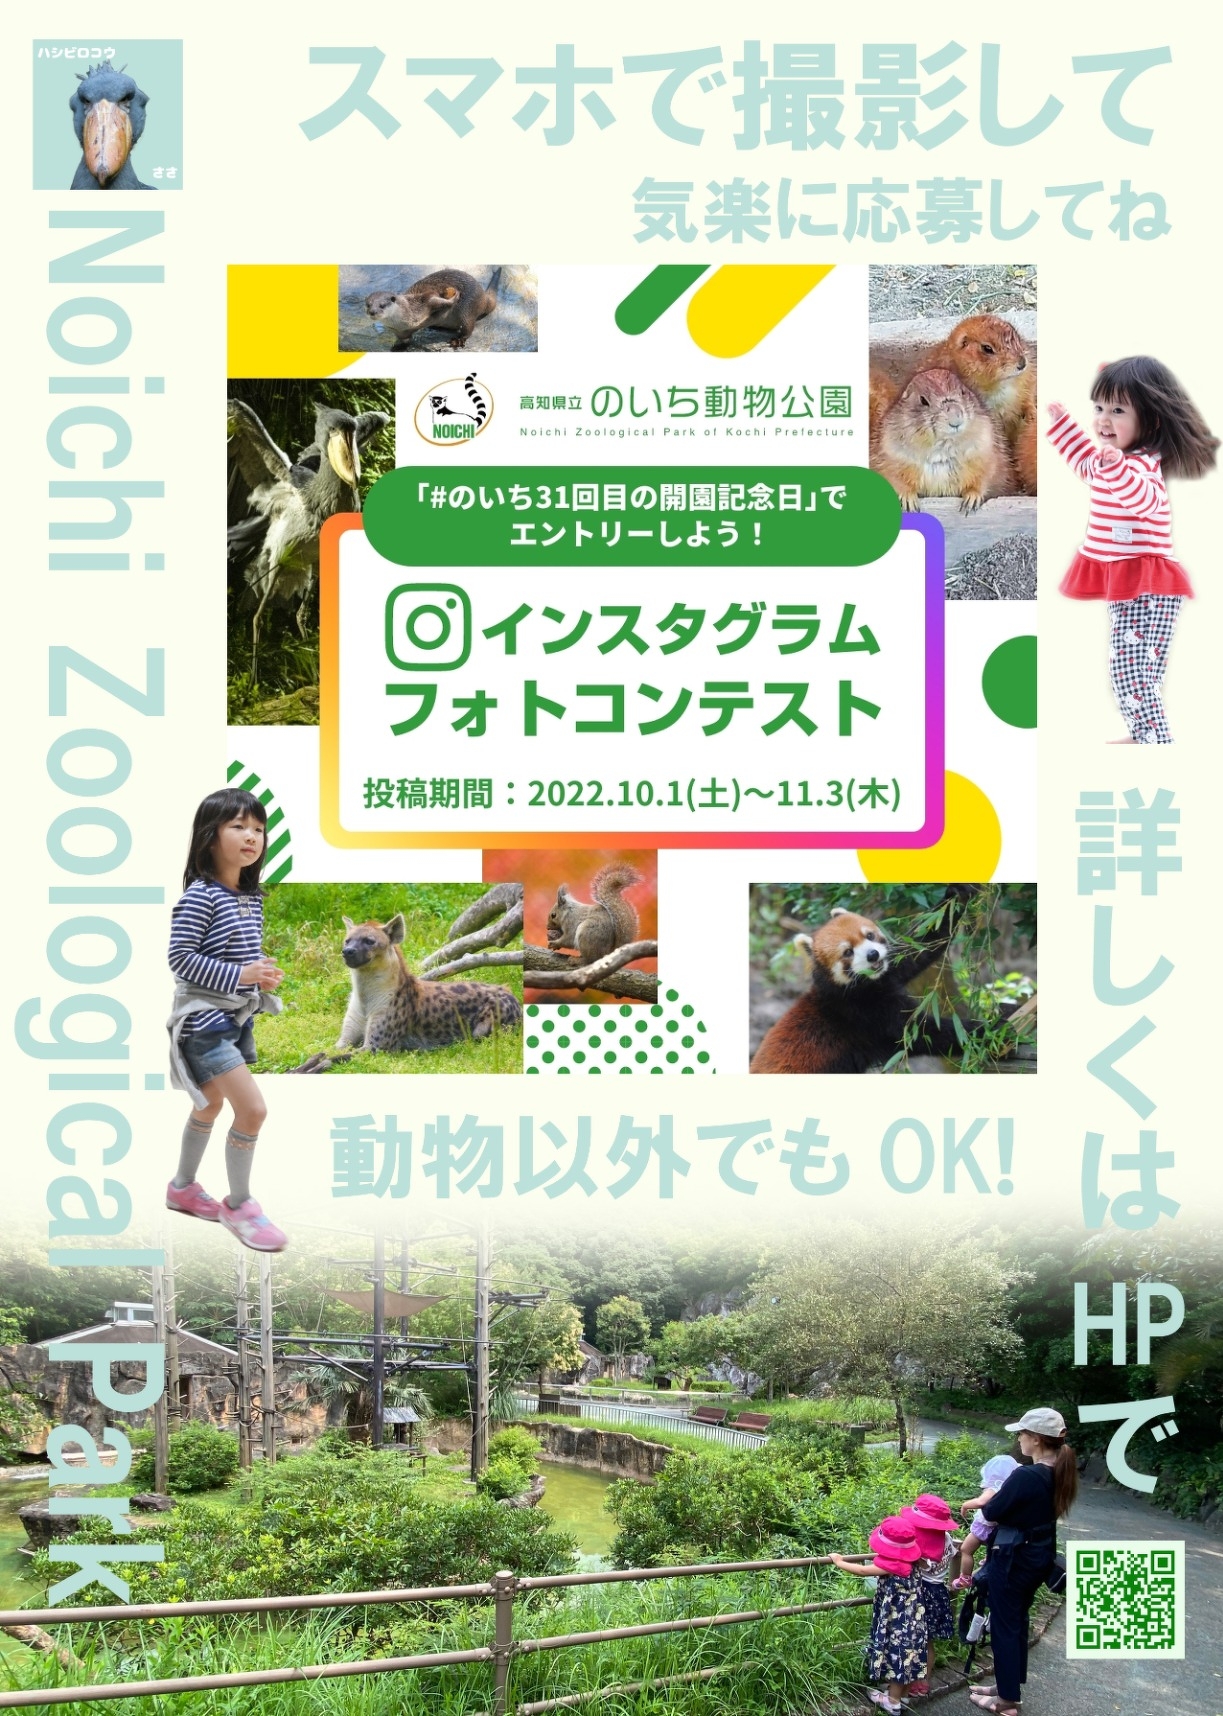 ３１回目の開園記念日 インスタグラムフォトコンテスト イベント情報 高知県立のいち動物公園 公式サイト 人も動物もいきいきと